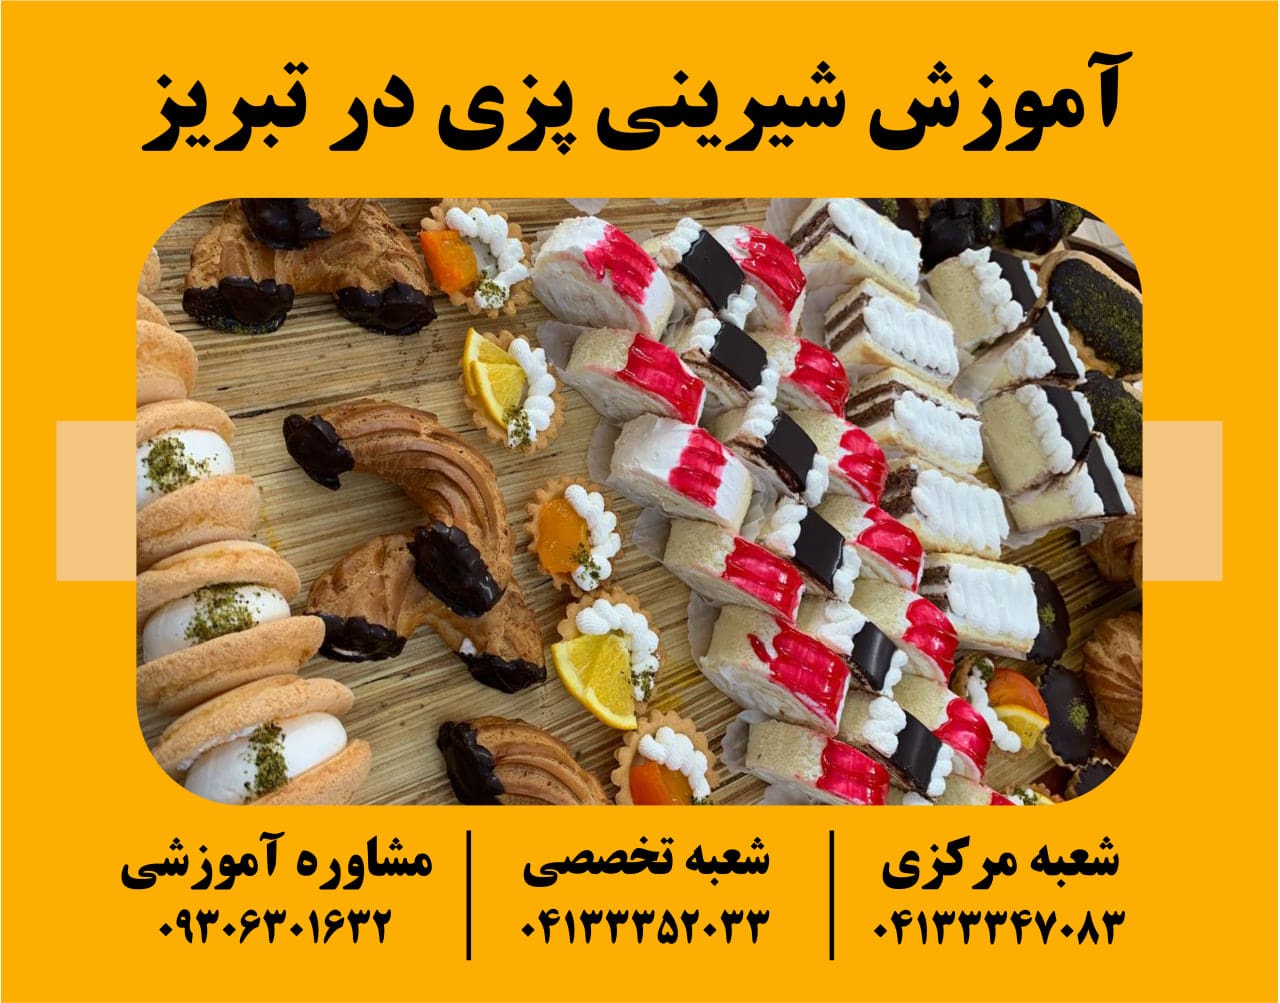 آموزش شیرینی پزی در تبریز